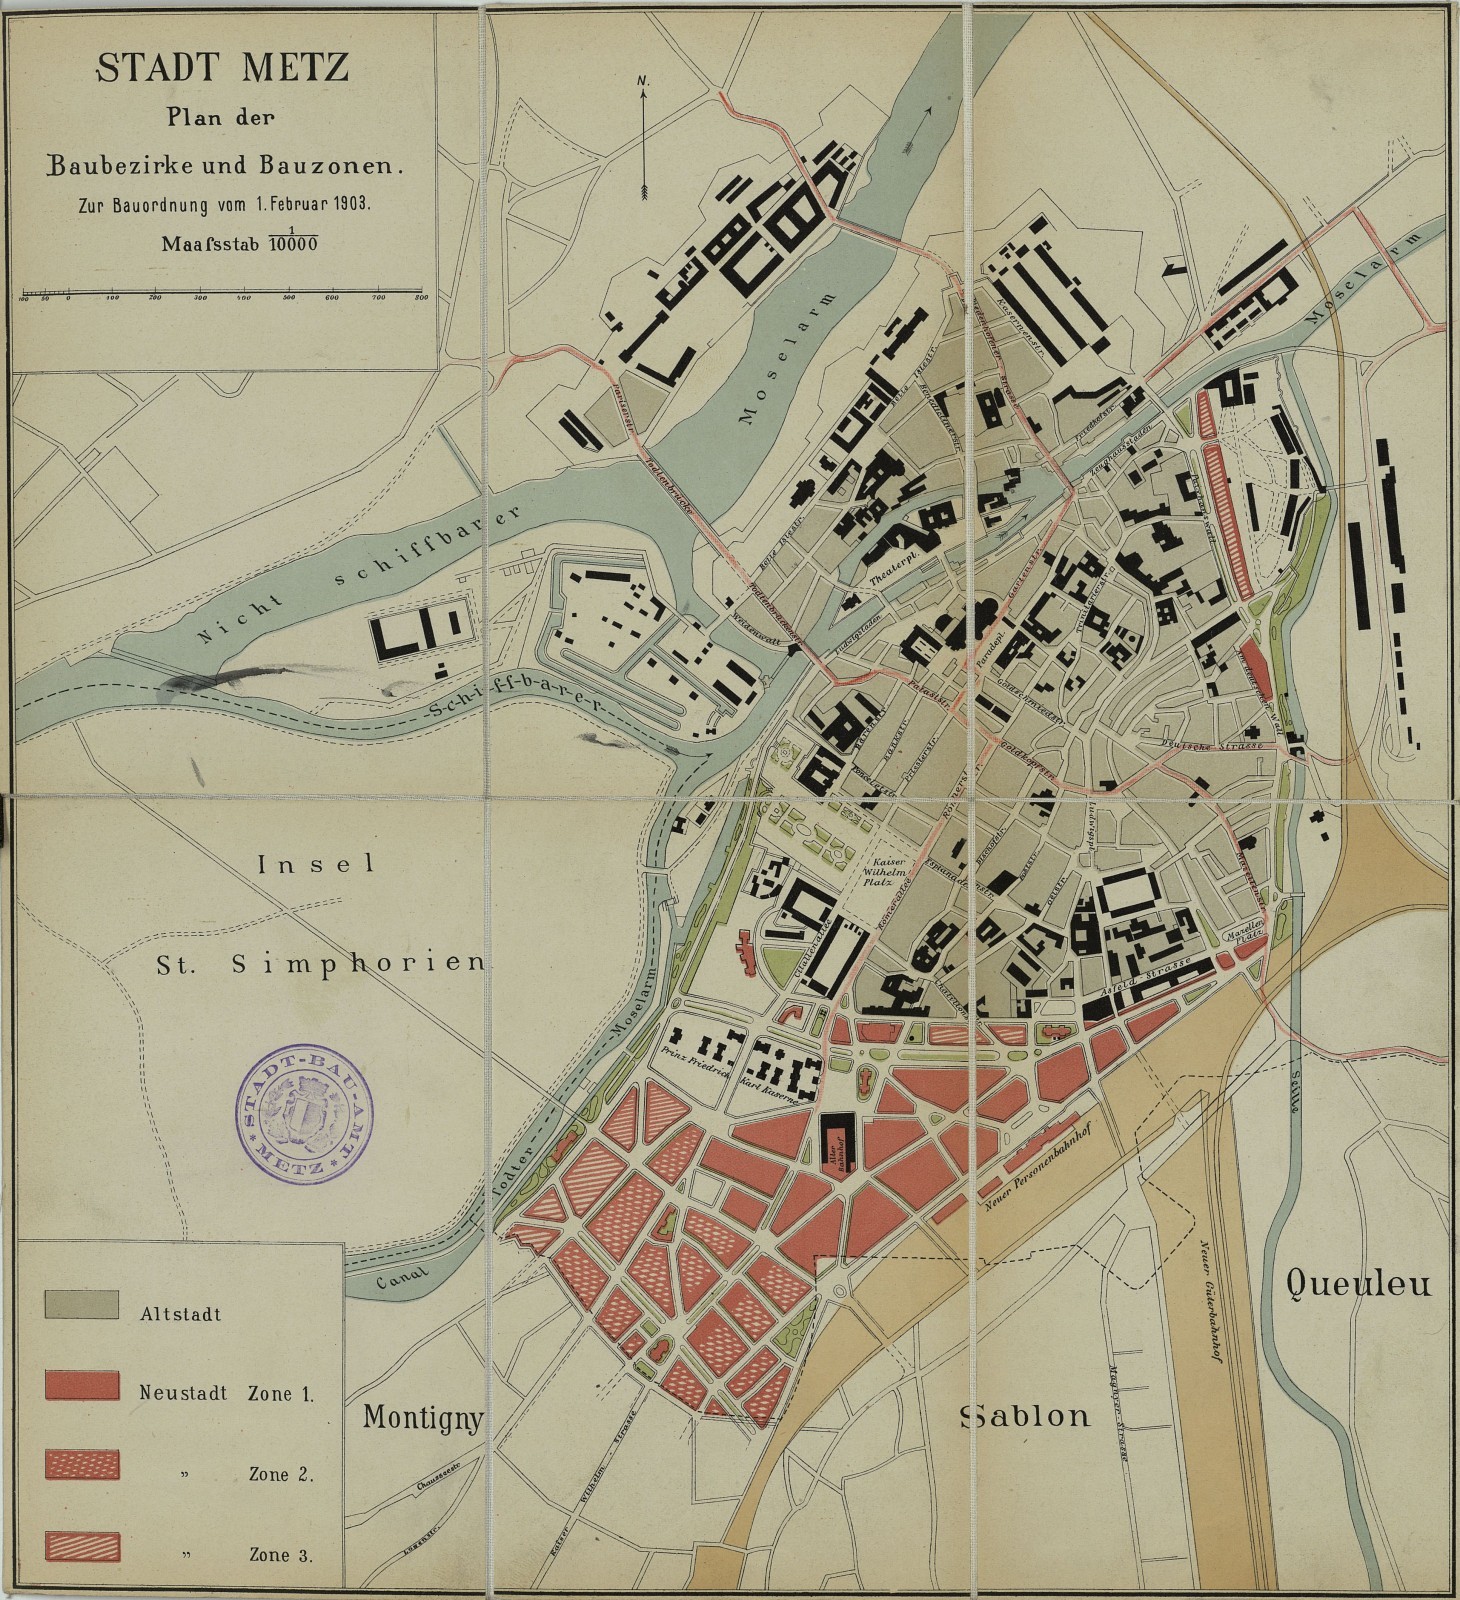 Plan de zonage accompagnant la nouvelle police de construction de la ville de Metz au 1er février 1903 (Archives municipales de Metz, MC 464).